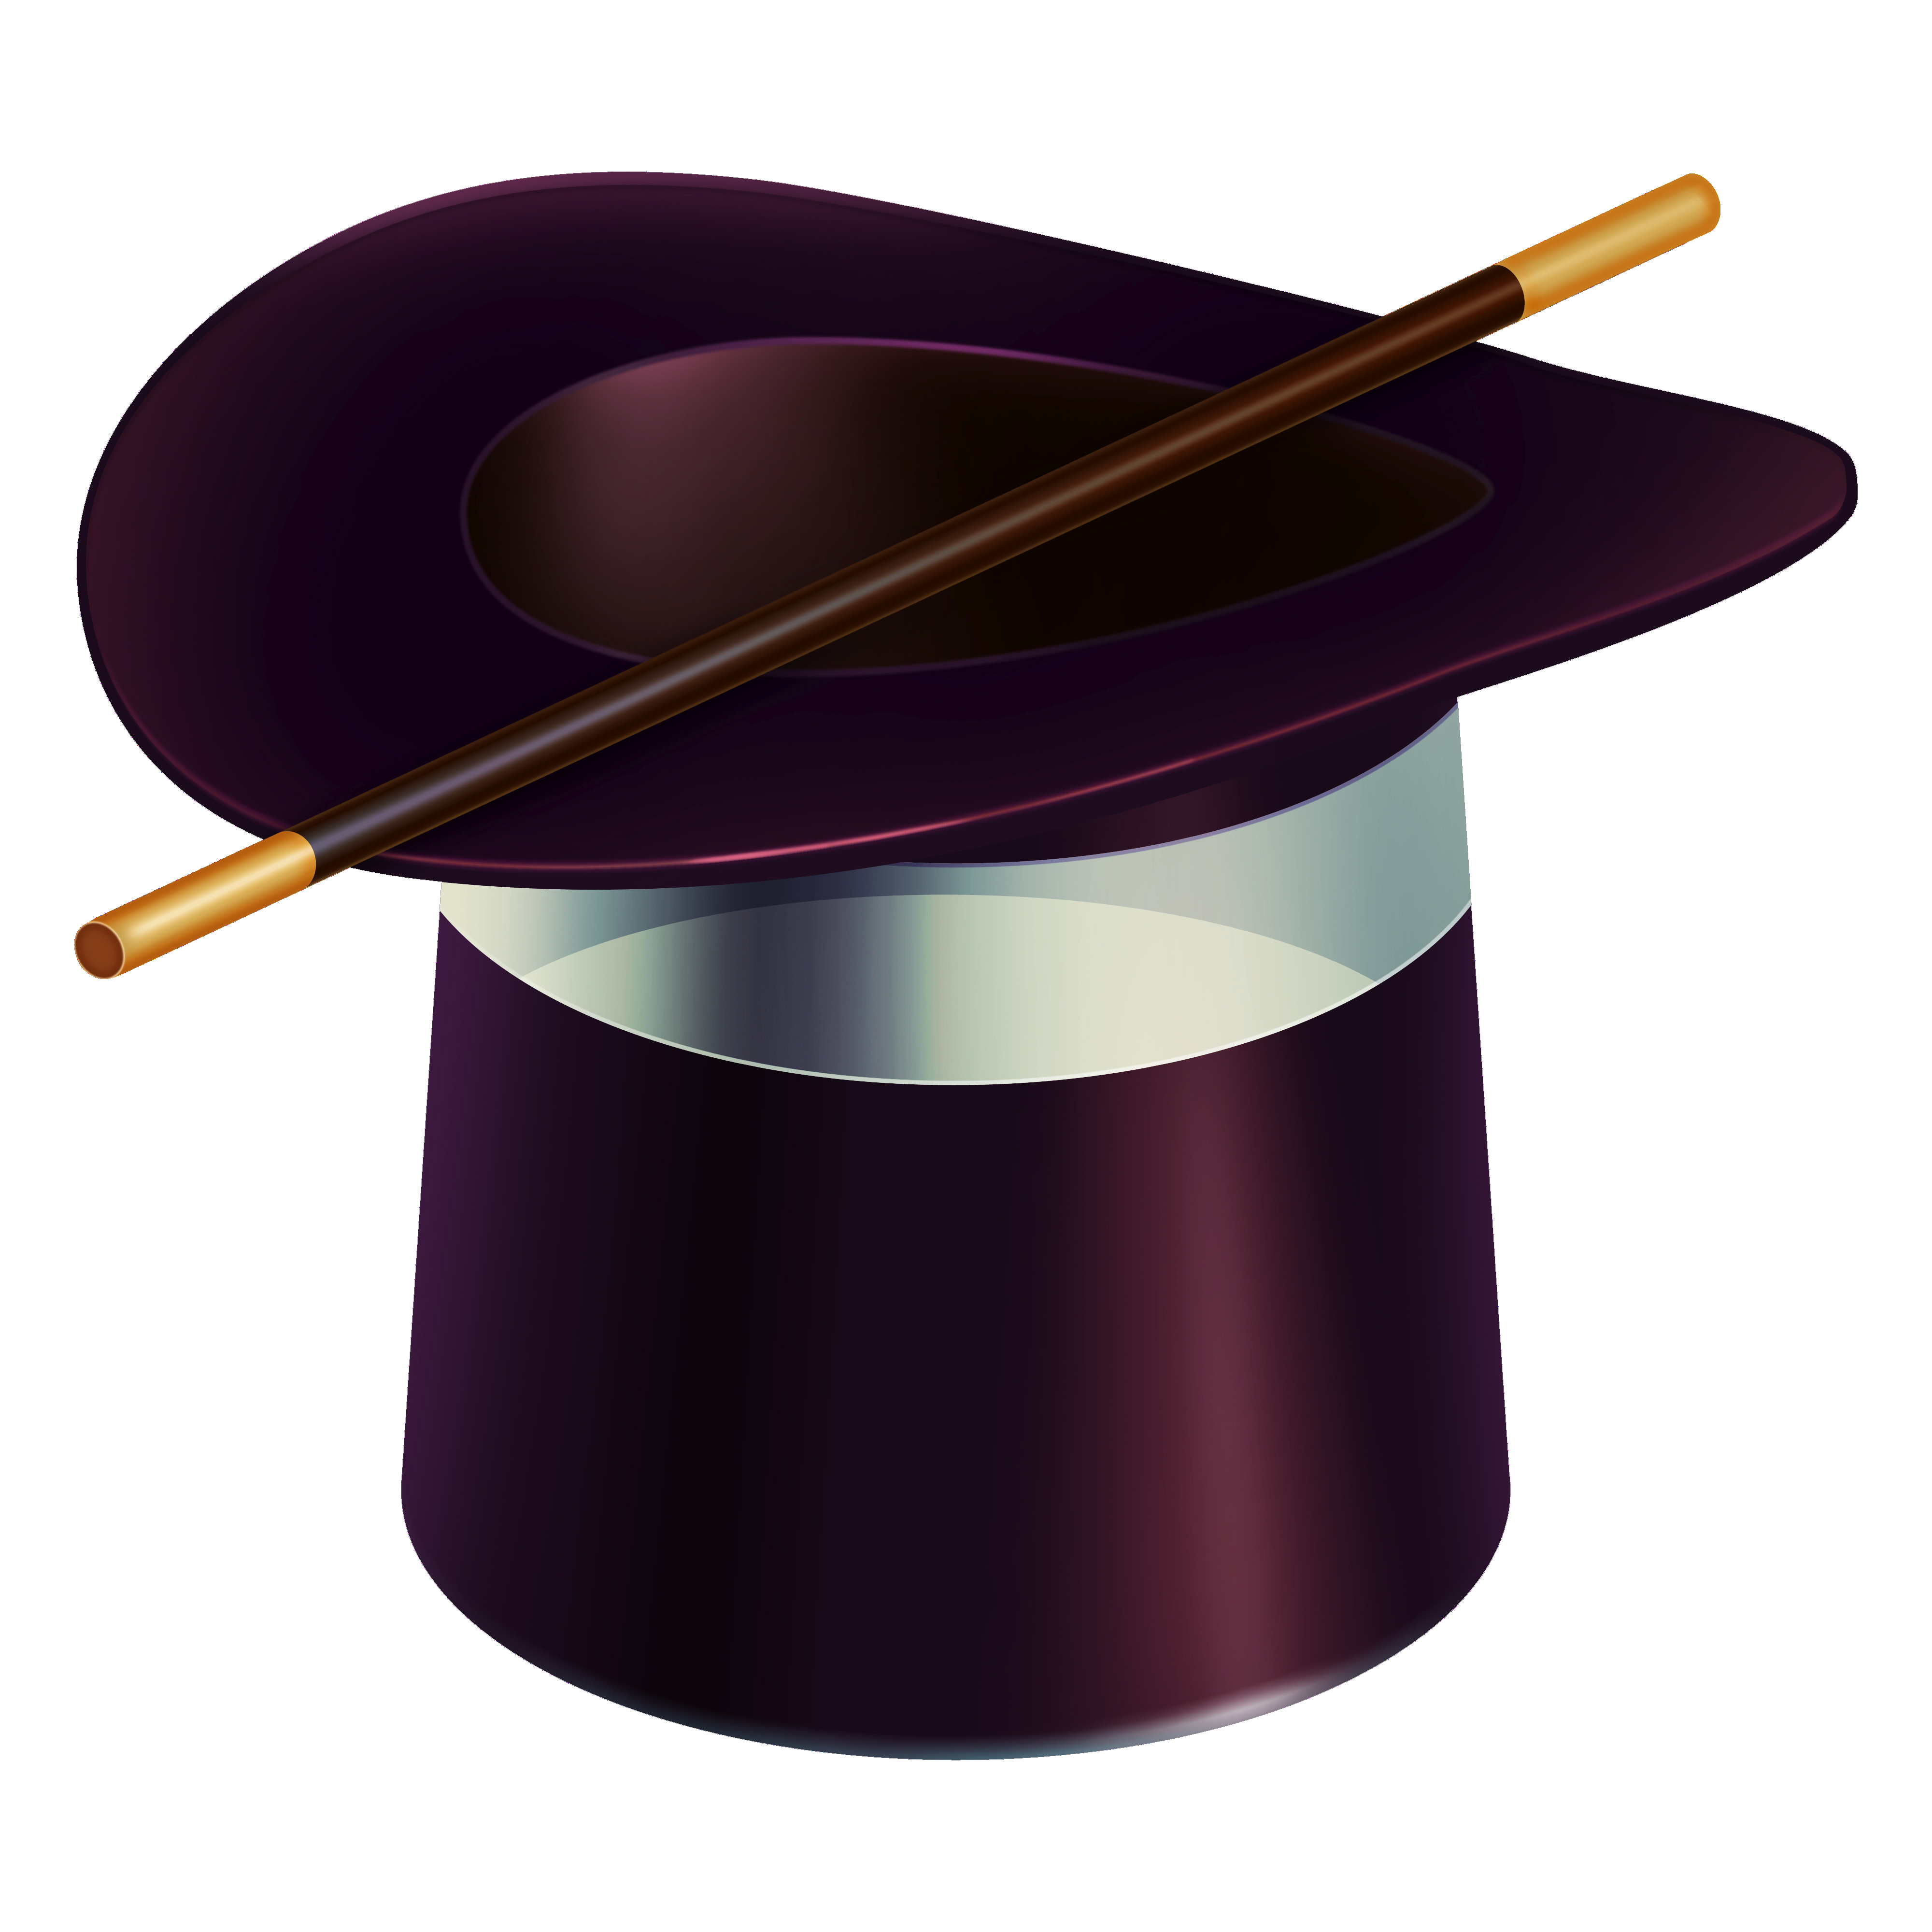 Magic Hat PNG Image File